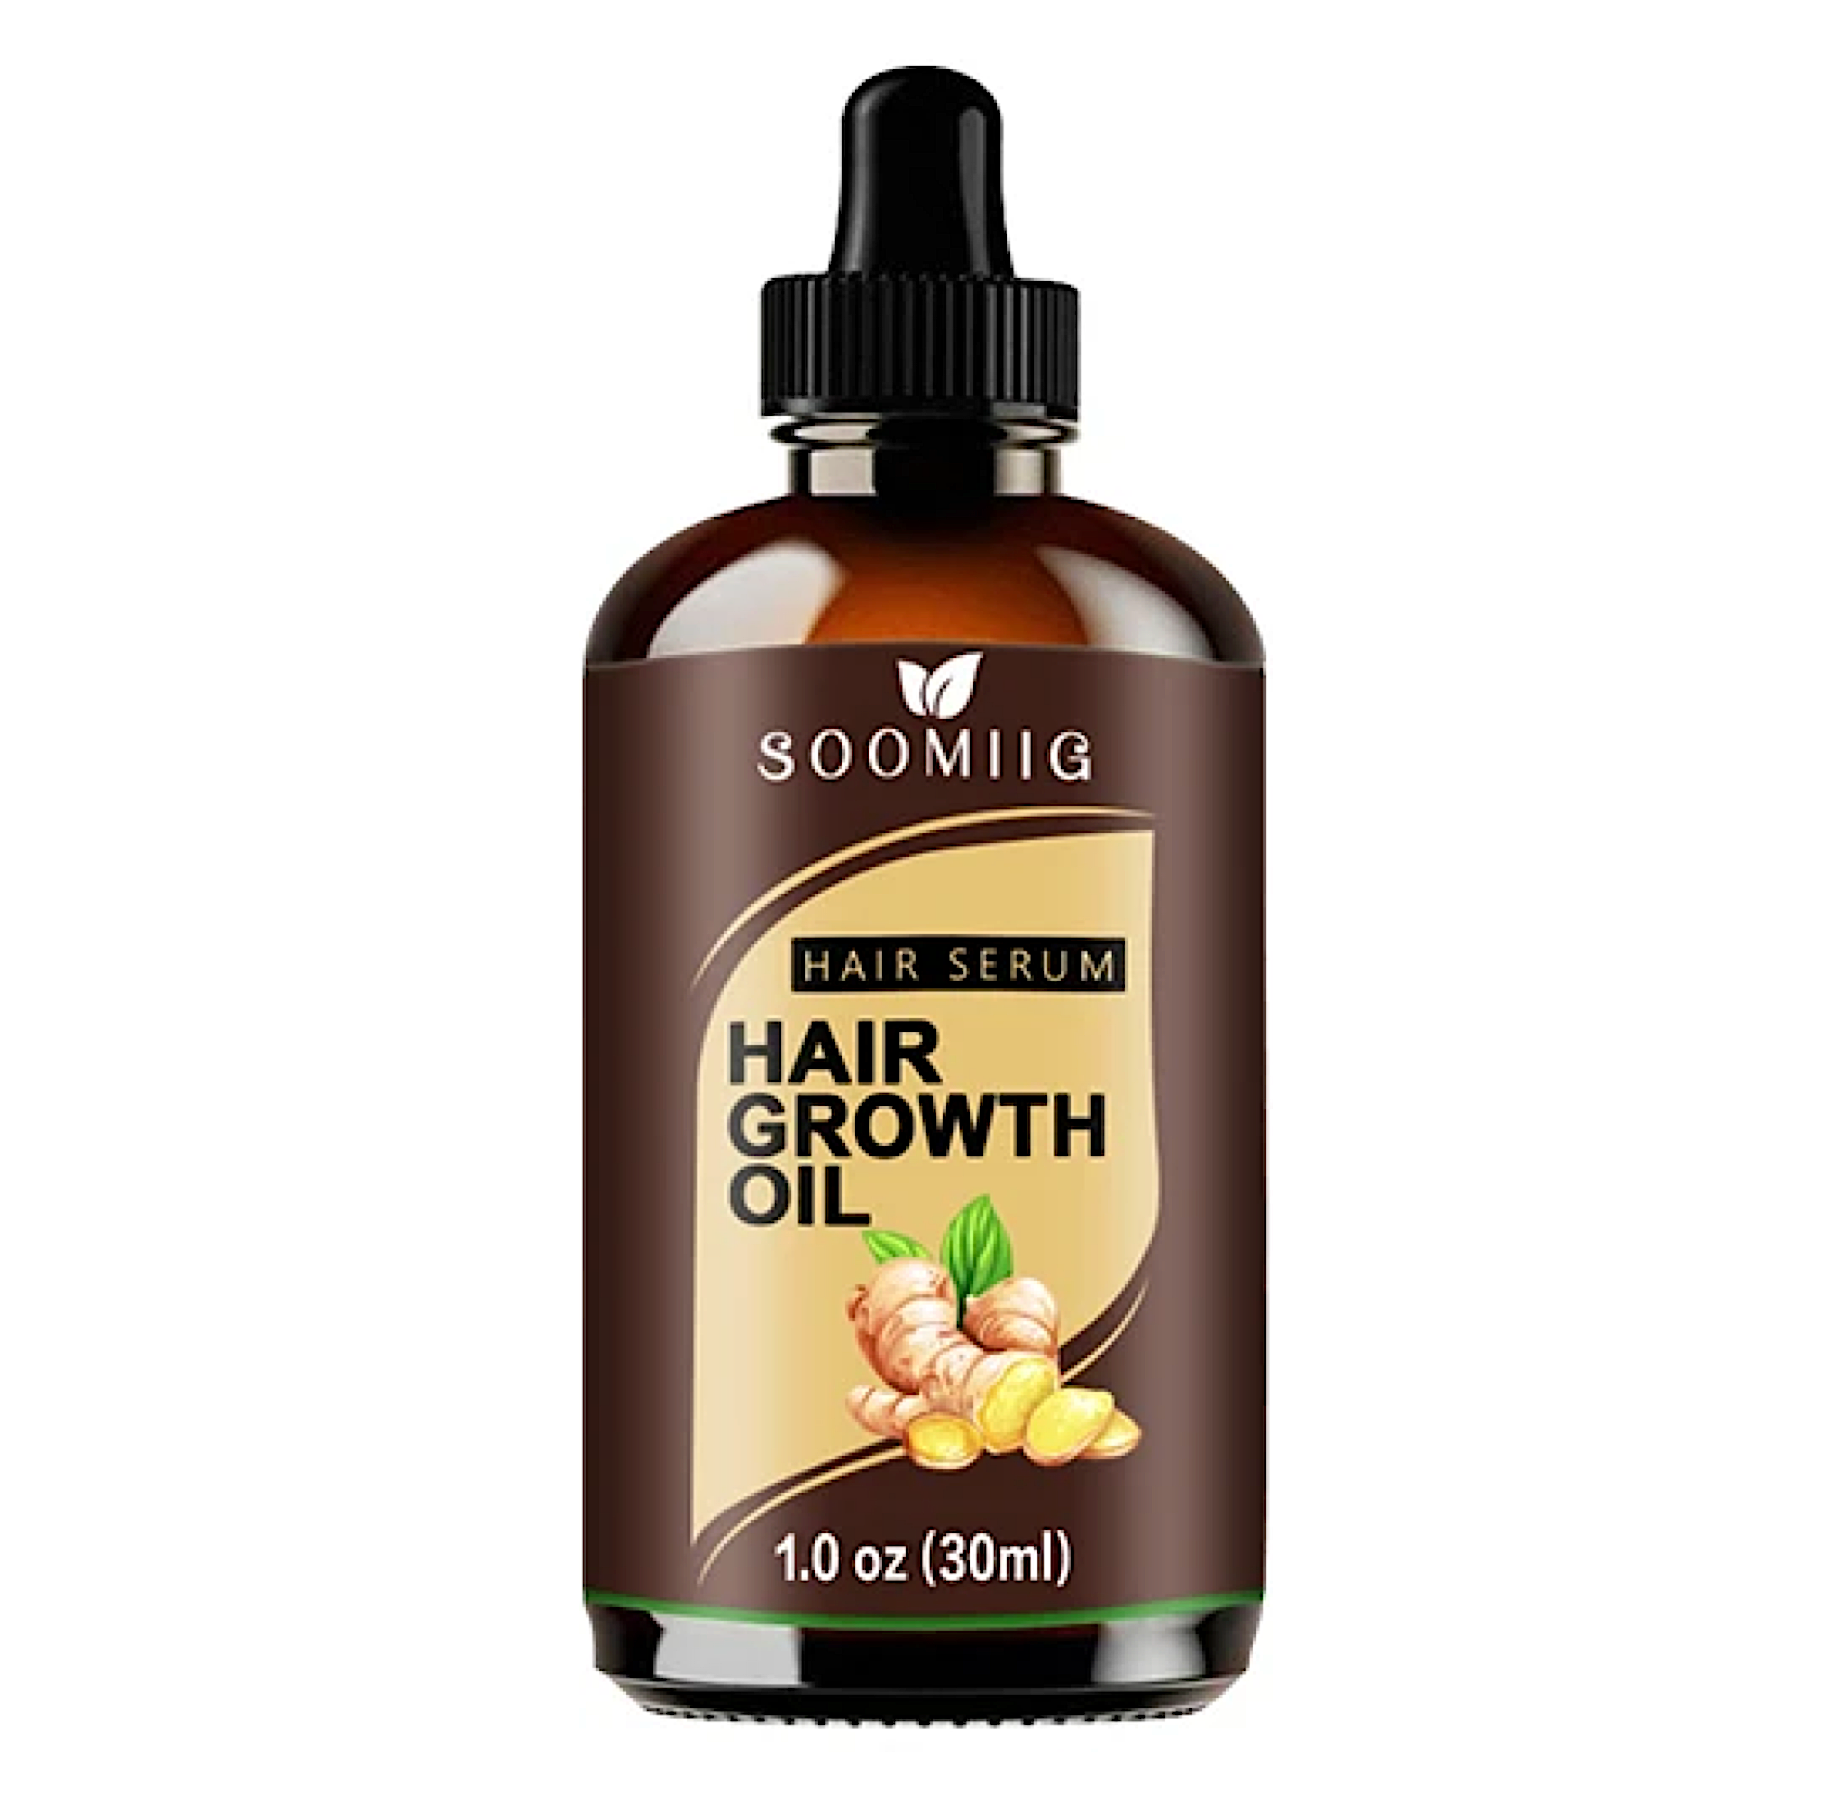 Soomiig Hair Serum Hair Growth Oil 30ml